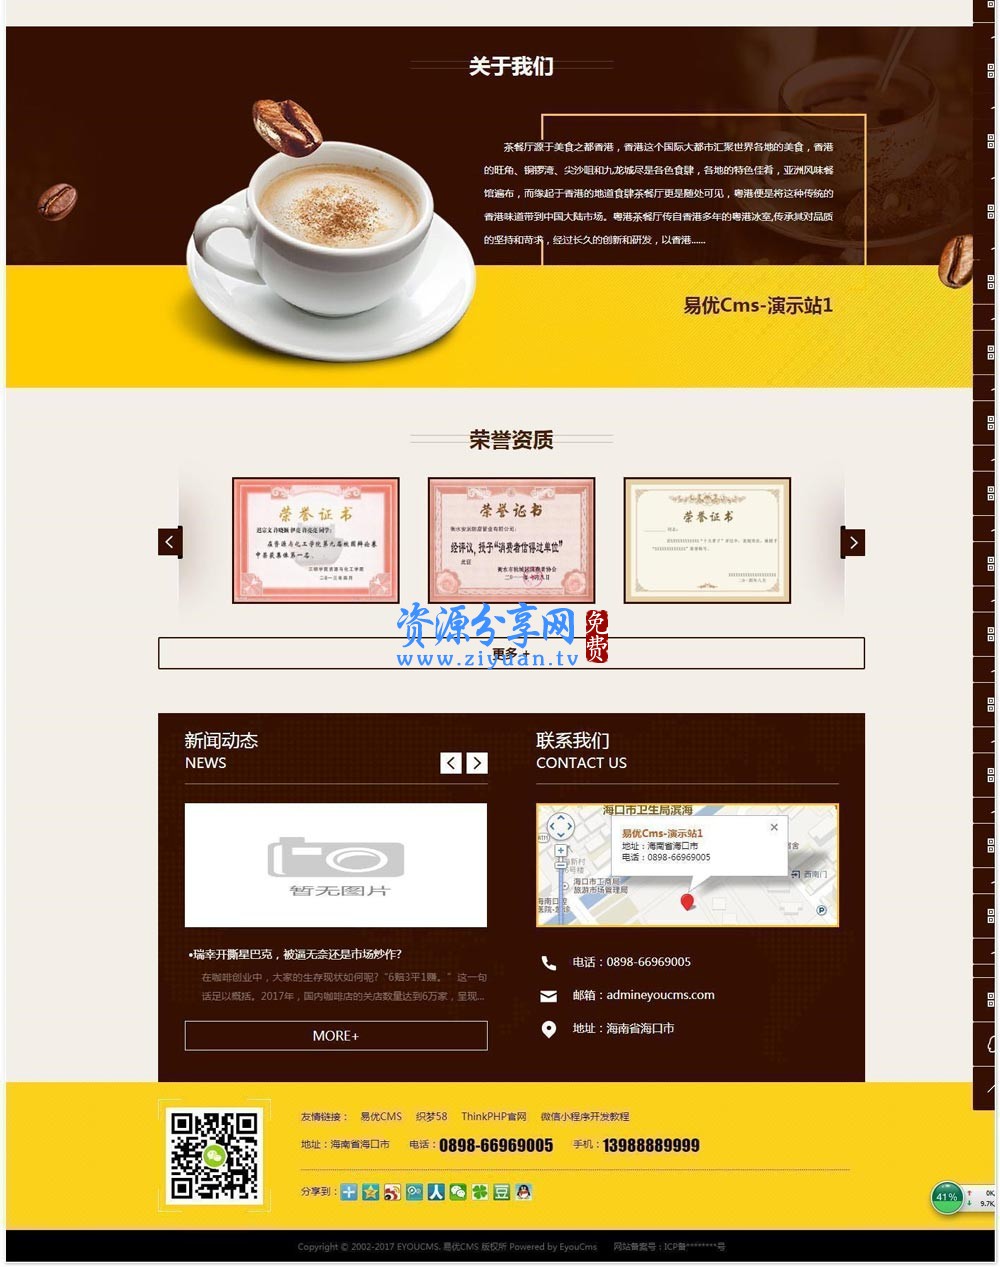 咖啡网站管理系统 v3.0 前端可视化替换 banner 图片管理功能+新增腾讯云短信